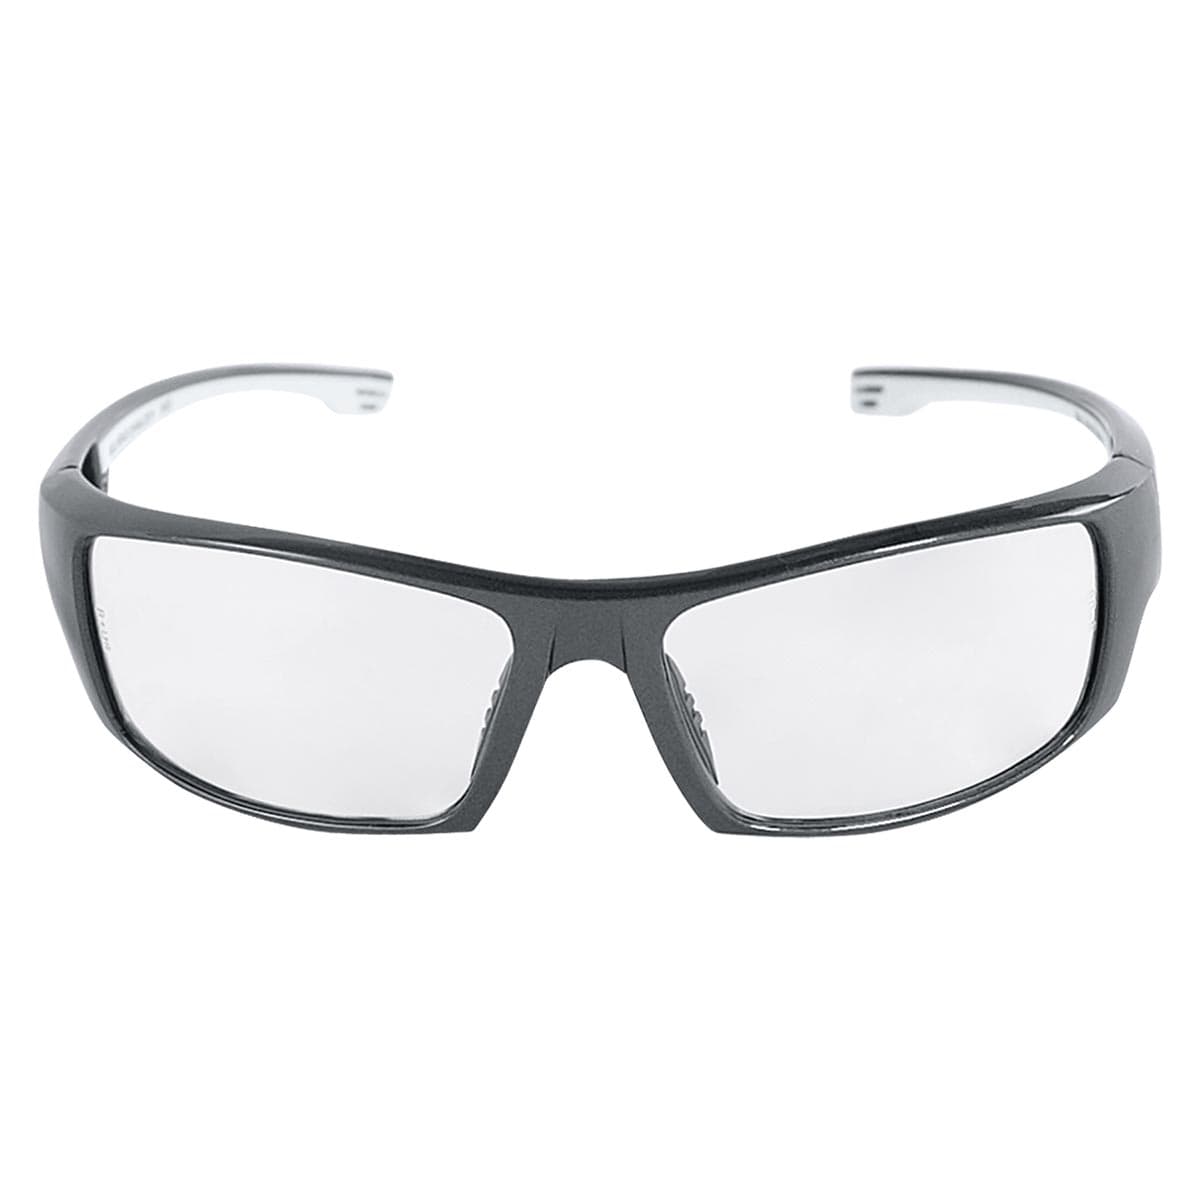 Dorado PFT Anti-Fog Safety Glasses